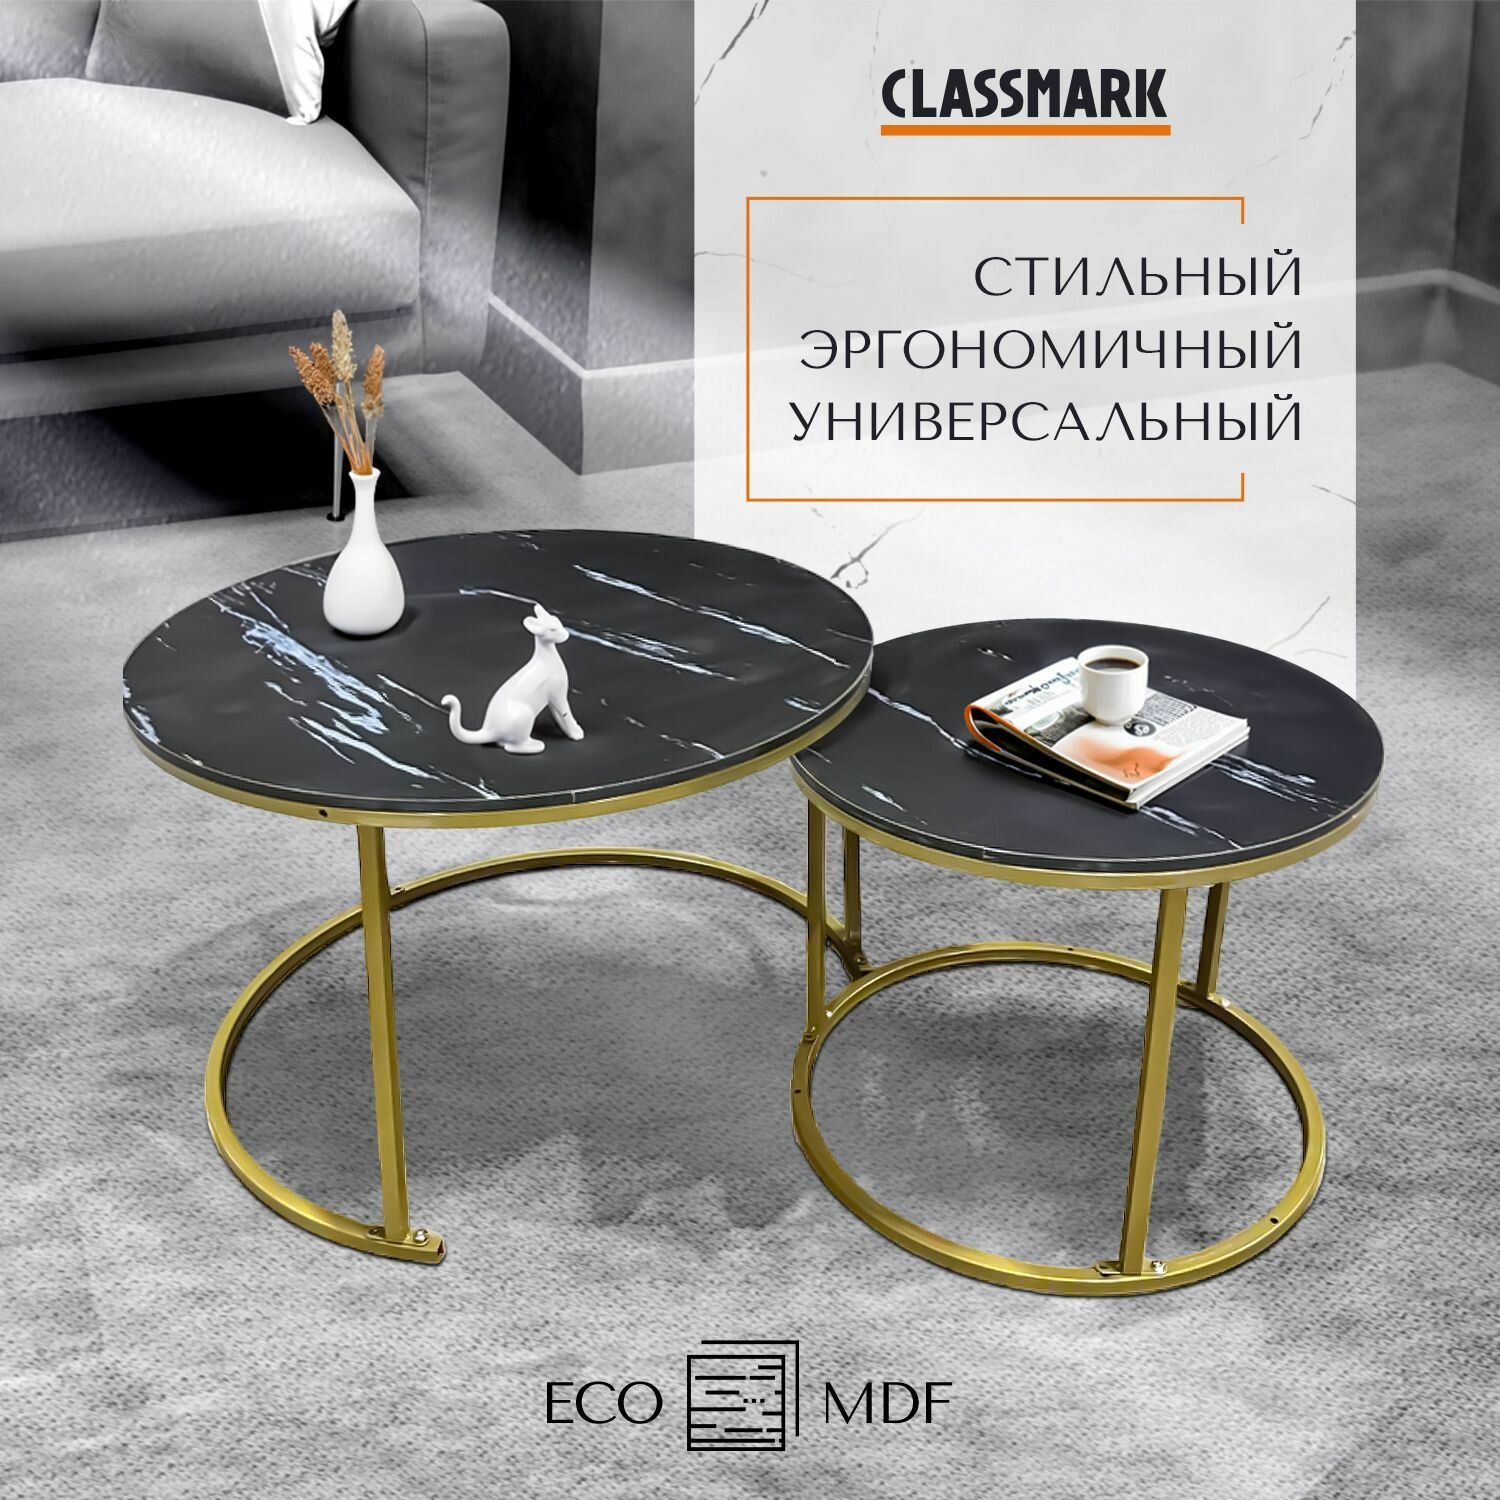 Журнальный столик круглый черный Classmark кофейный стол в гостинную и чайный, прикроватный лофт, МДФ, в комплекте 2 шт, 70 45 см и 50 38 см, цвет мрамор, золото